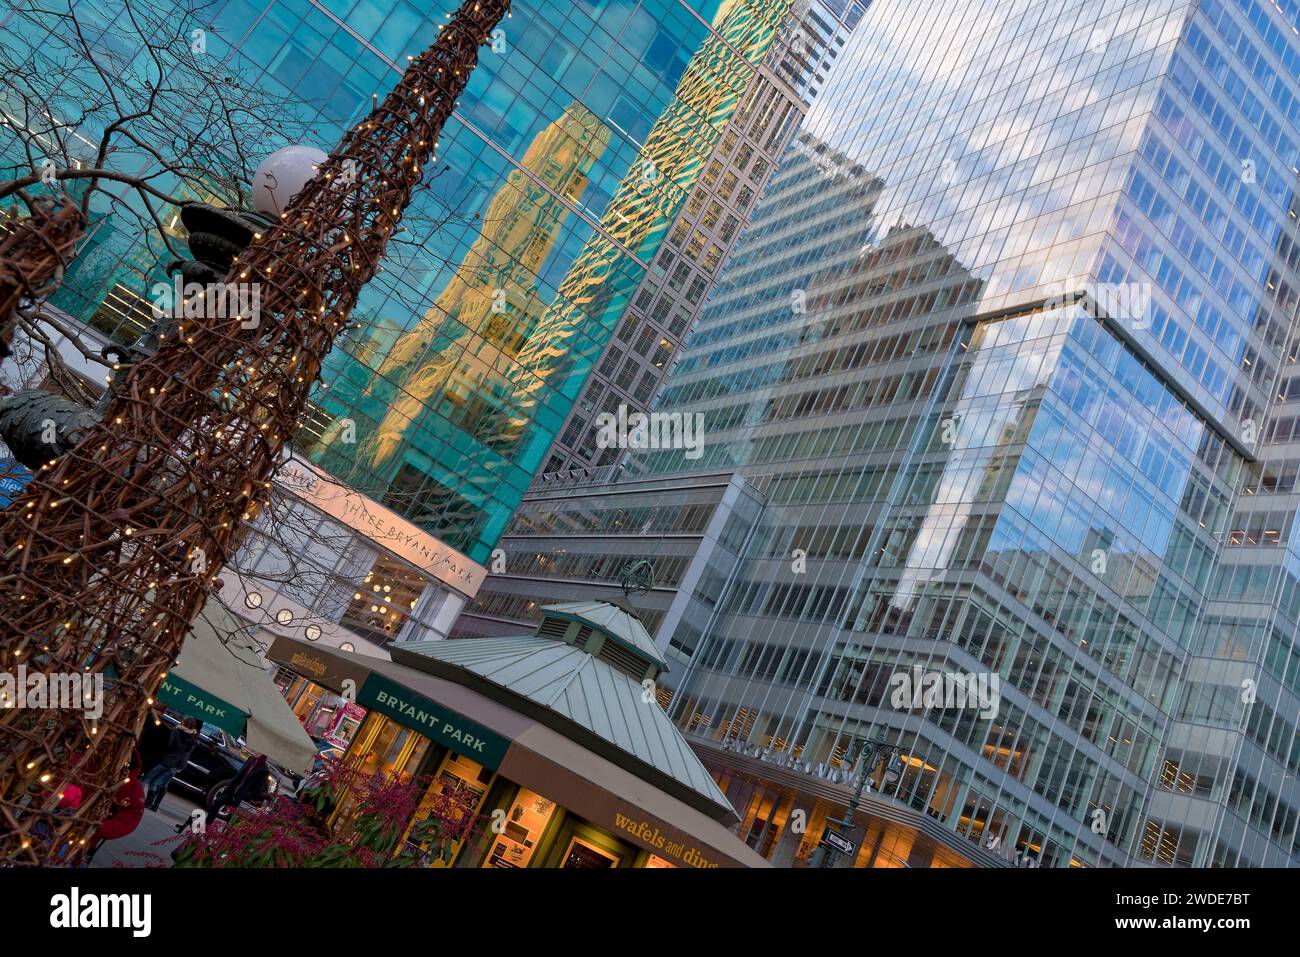 reflets dans les Buildings aux Facades de verres, Offrant du graphisme, autour de Bryant Park et du Winter Village à Manhattan Foto Stock